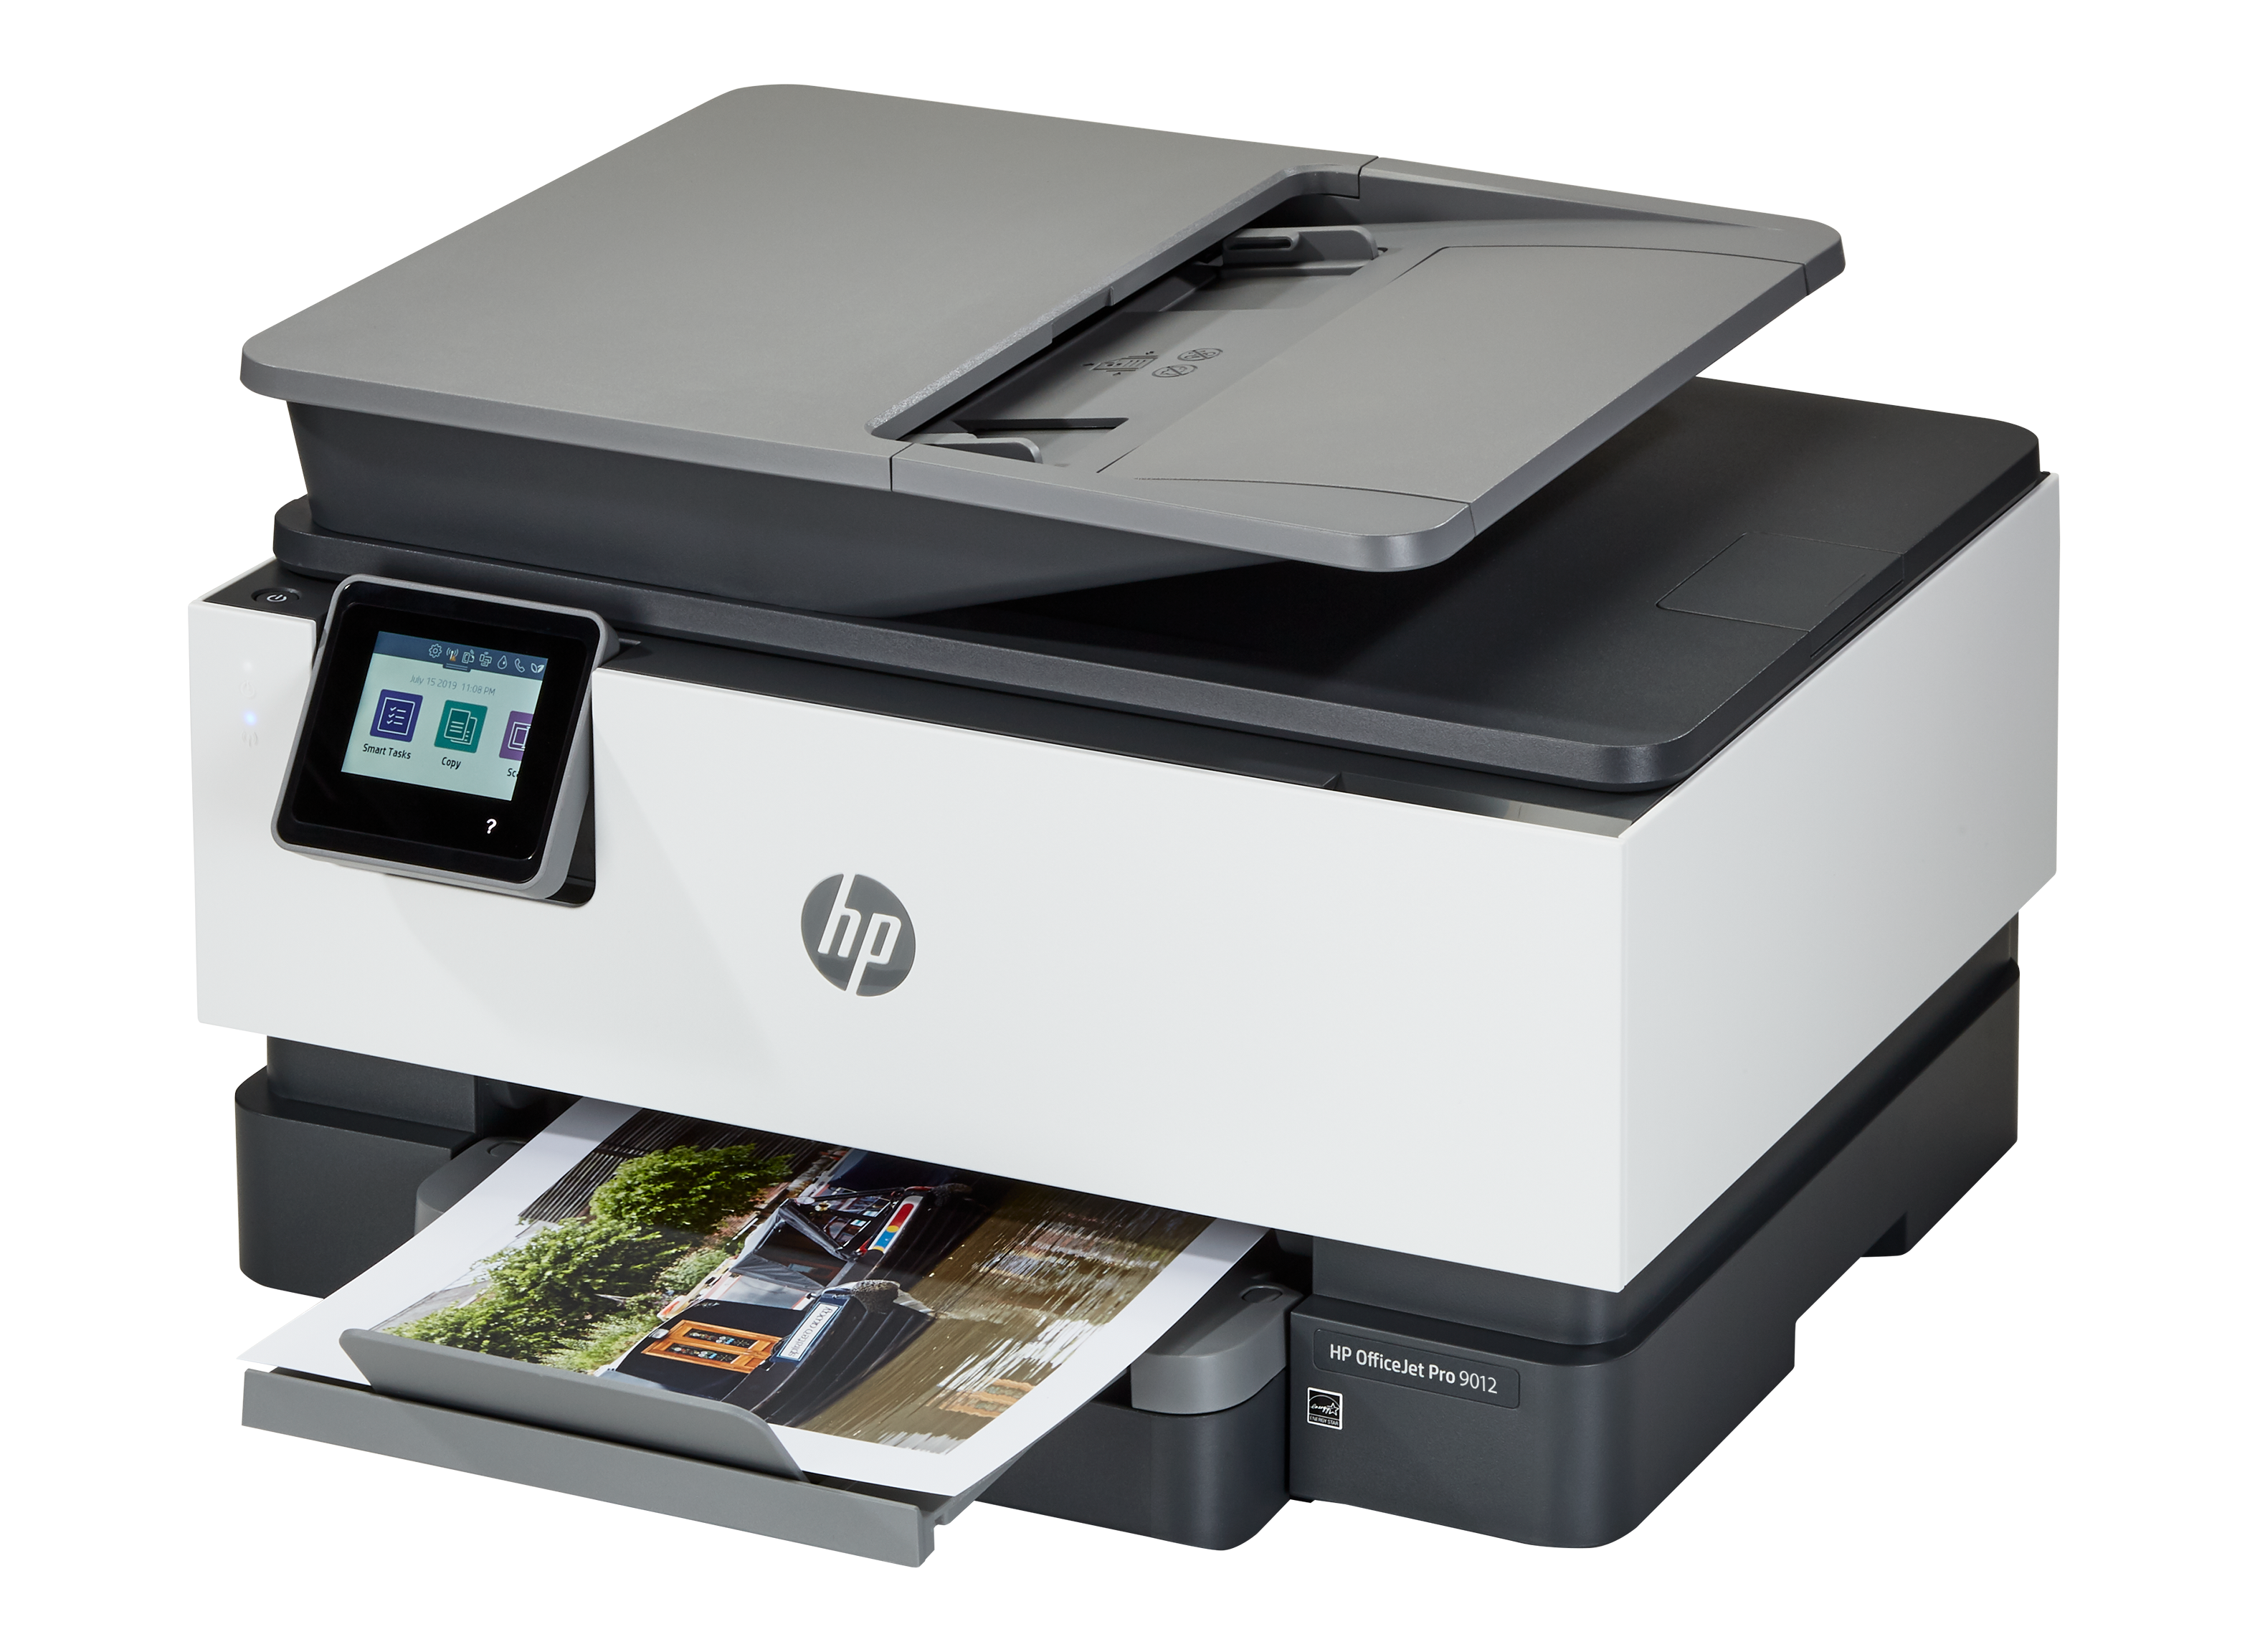 hun er Tante Overholdelse af HP Officejet Pro 9012 Printer Review - Consumer Reports